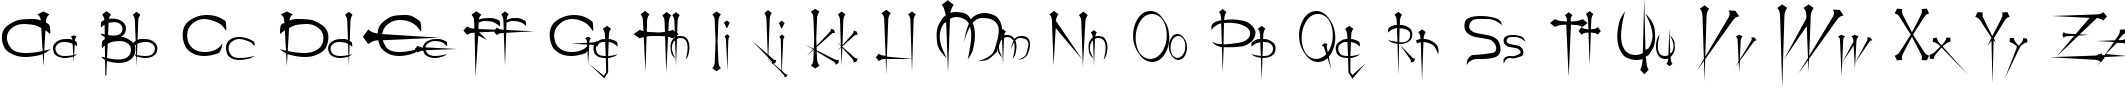 Пример написания английского алфавита шрифтом Ogilvie Cyr